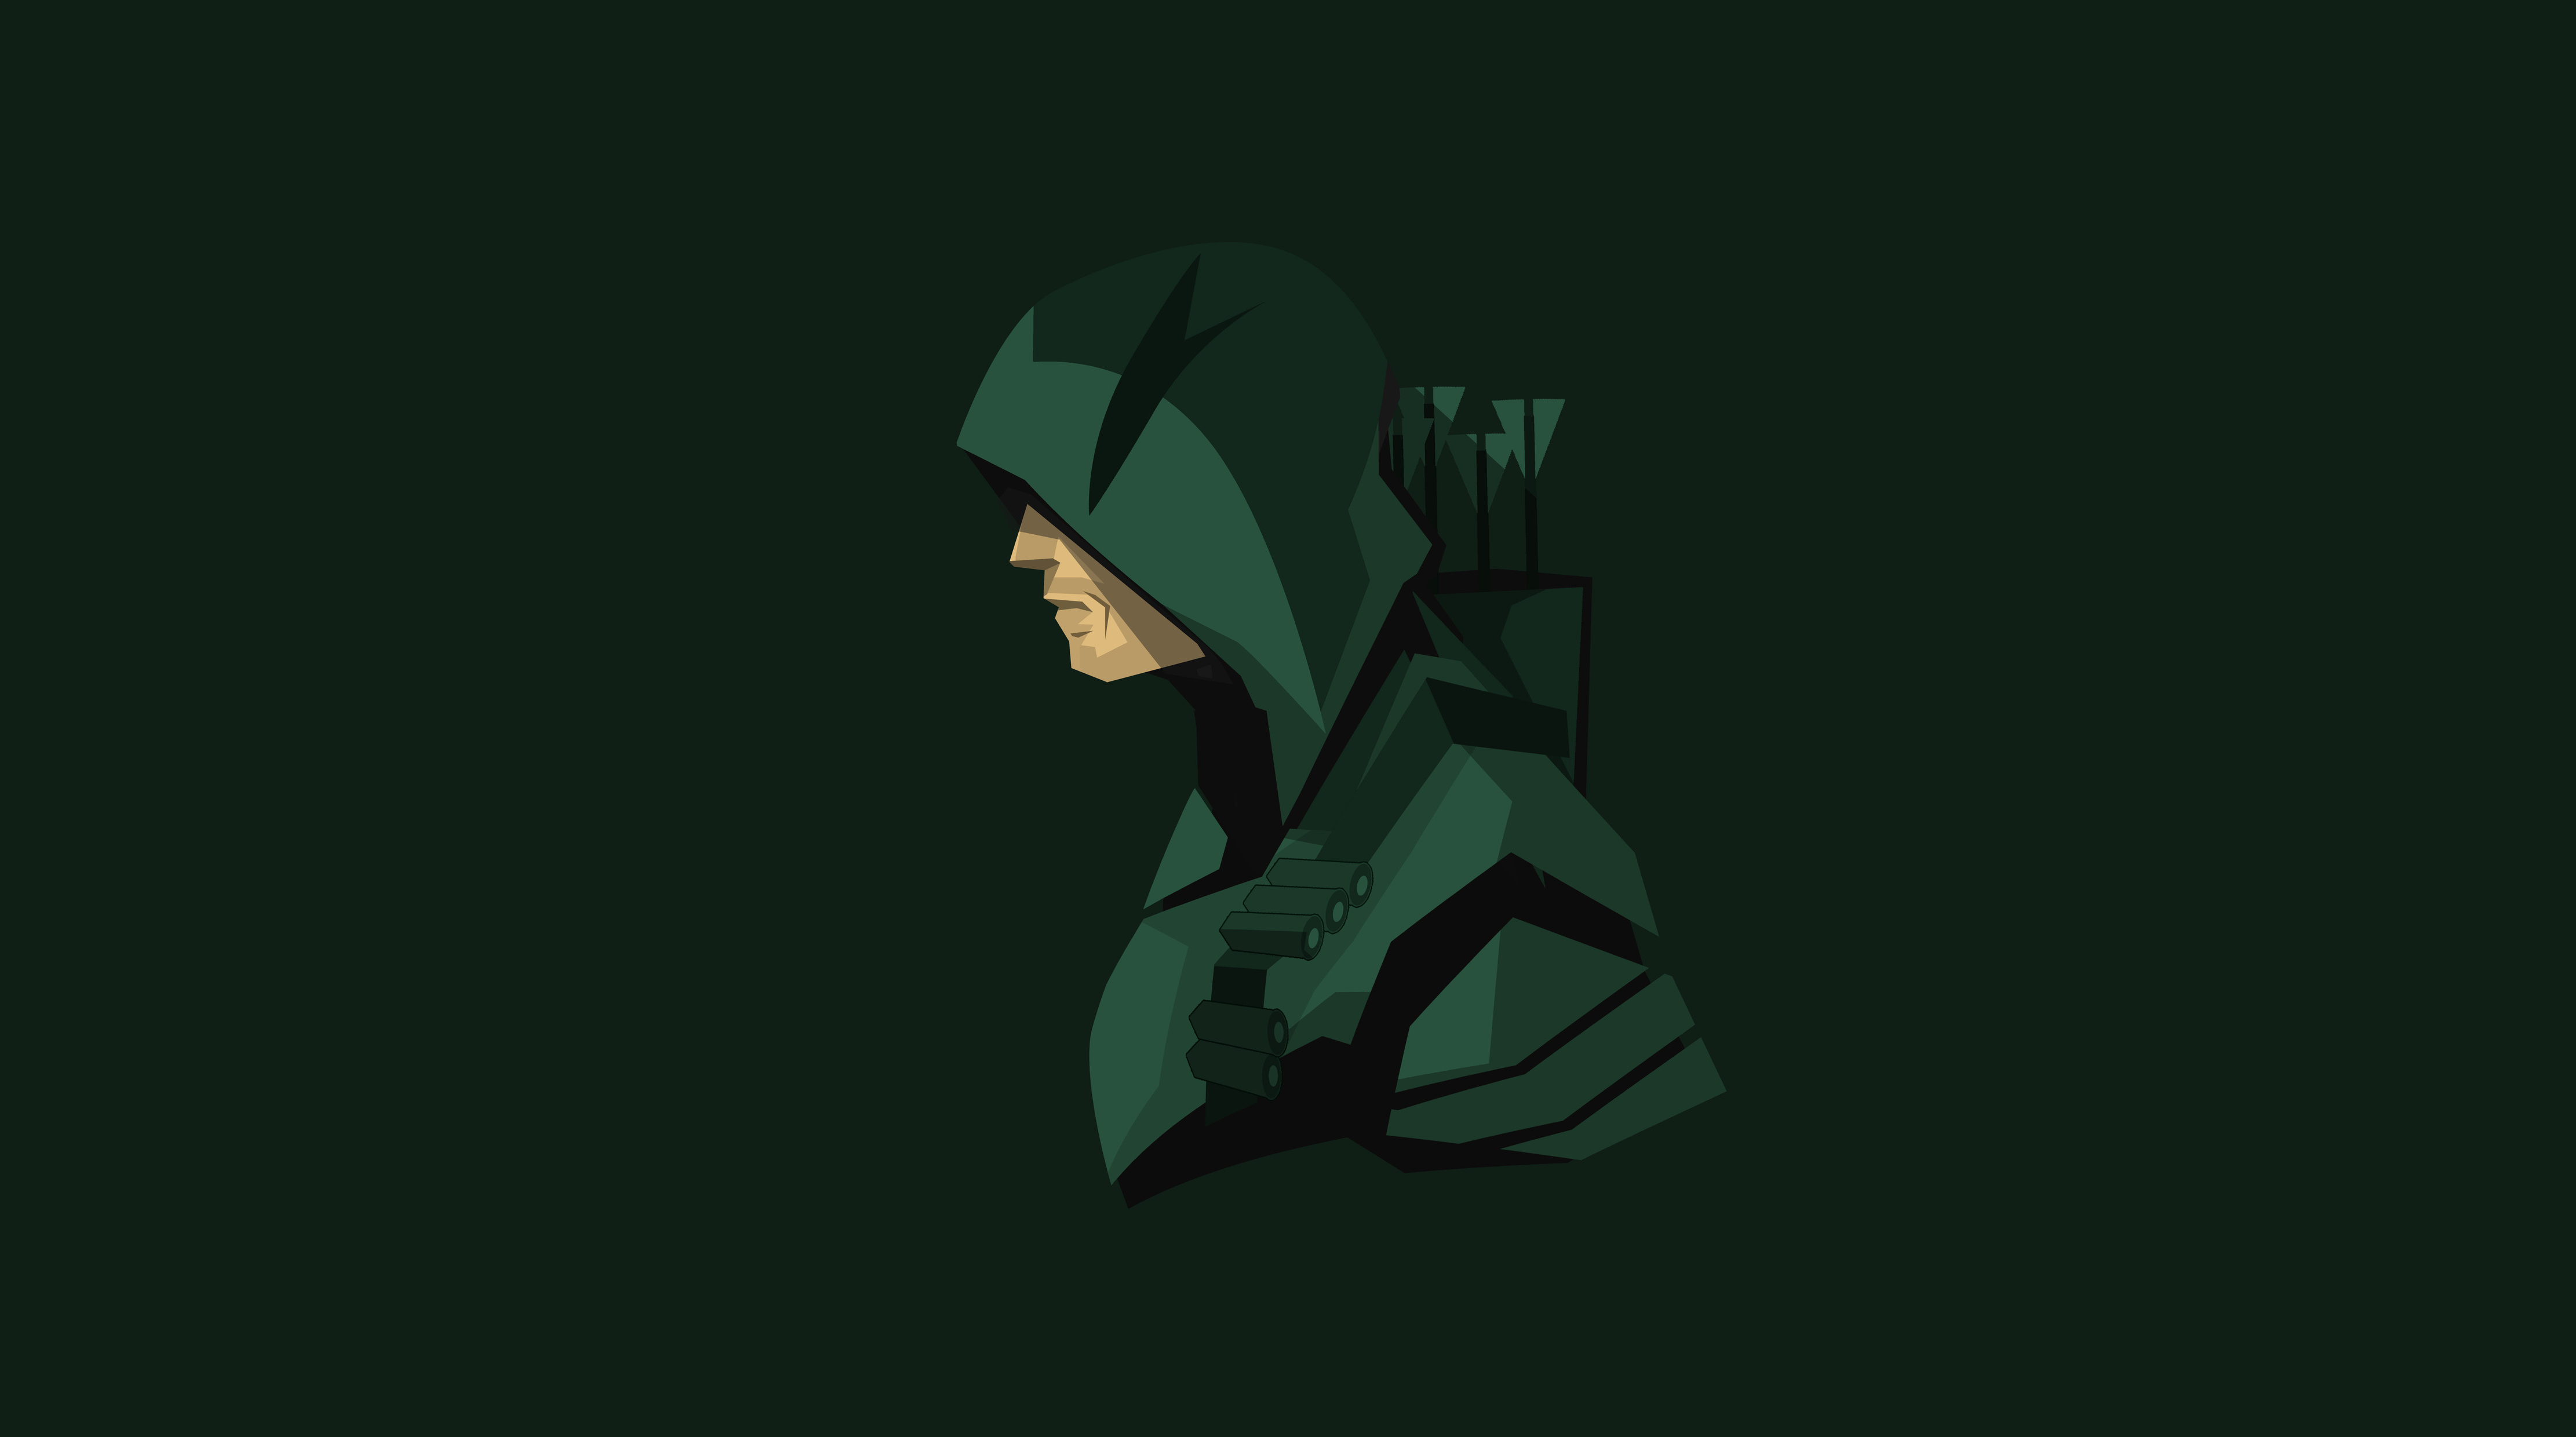 Green Arrow 4k Ultra HD Wallpaper Background Image